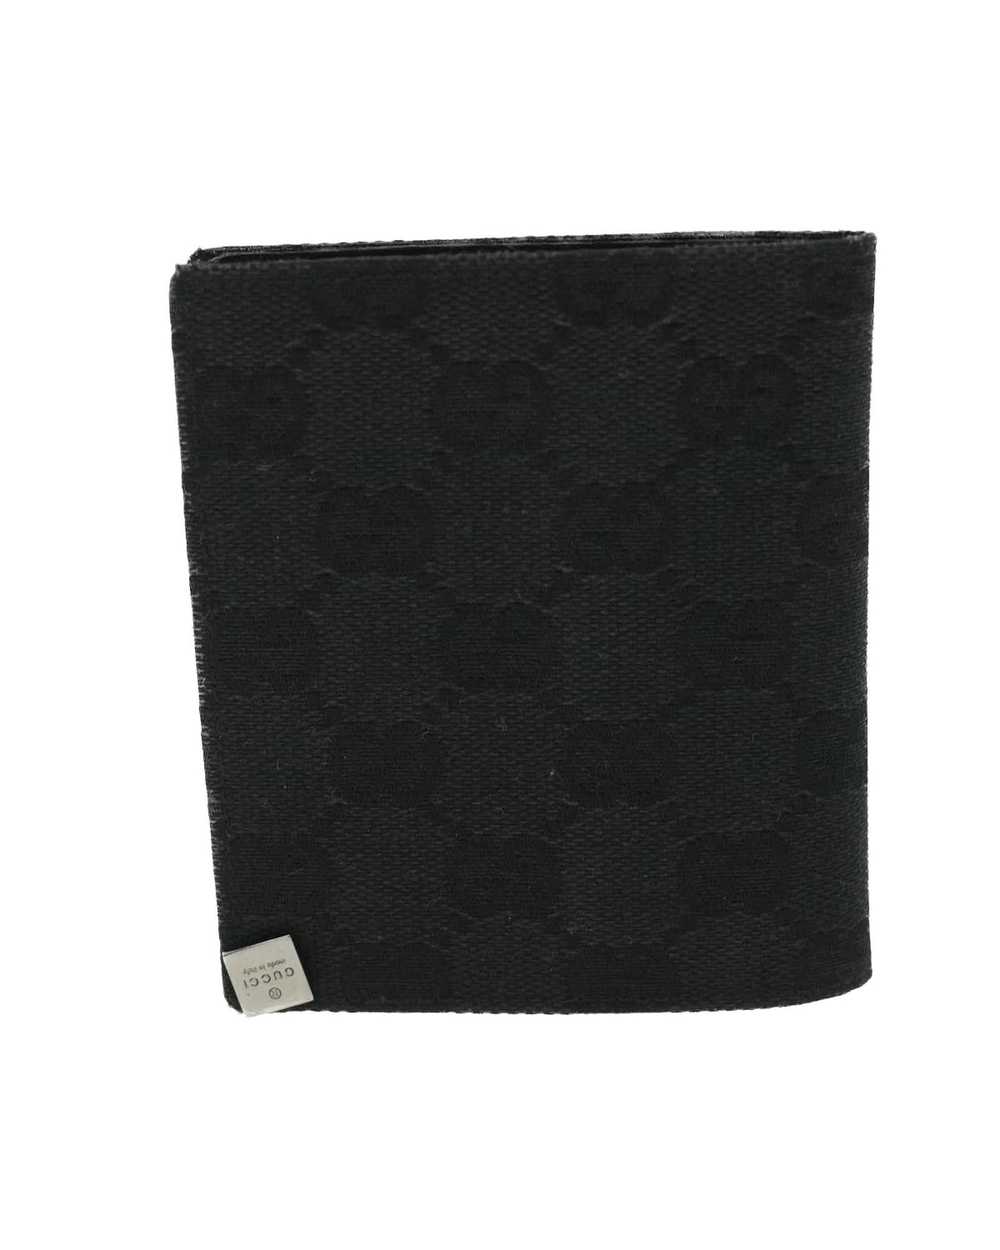 Gucci GG Canvas Card Case Black - image 2